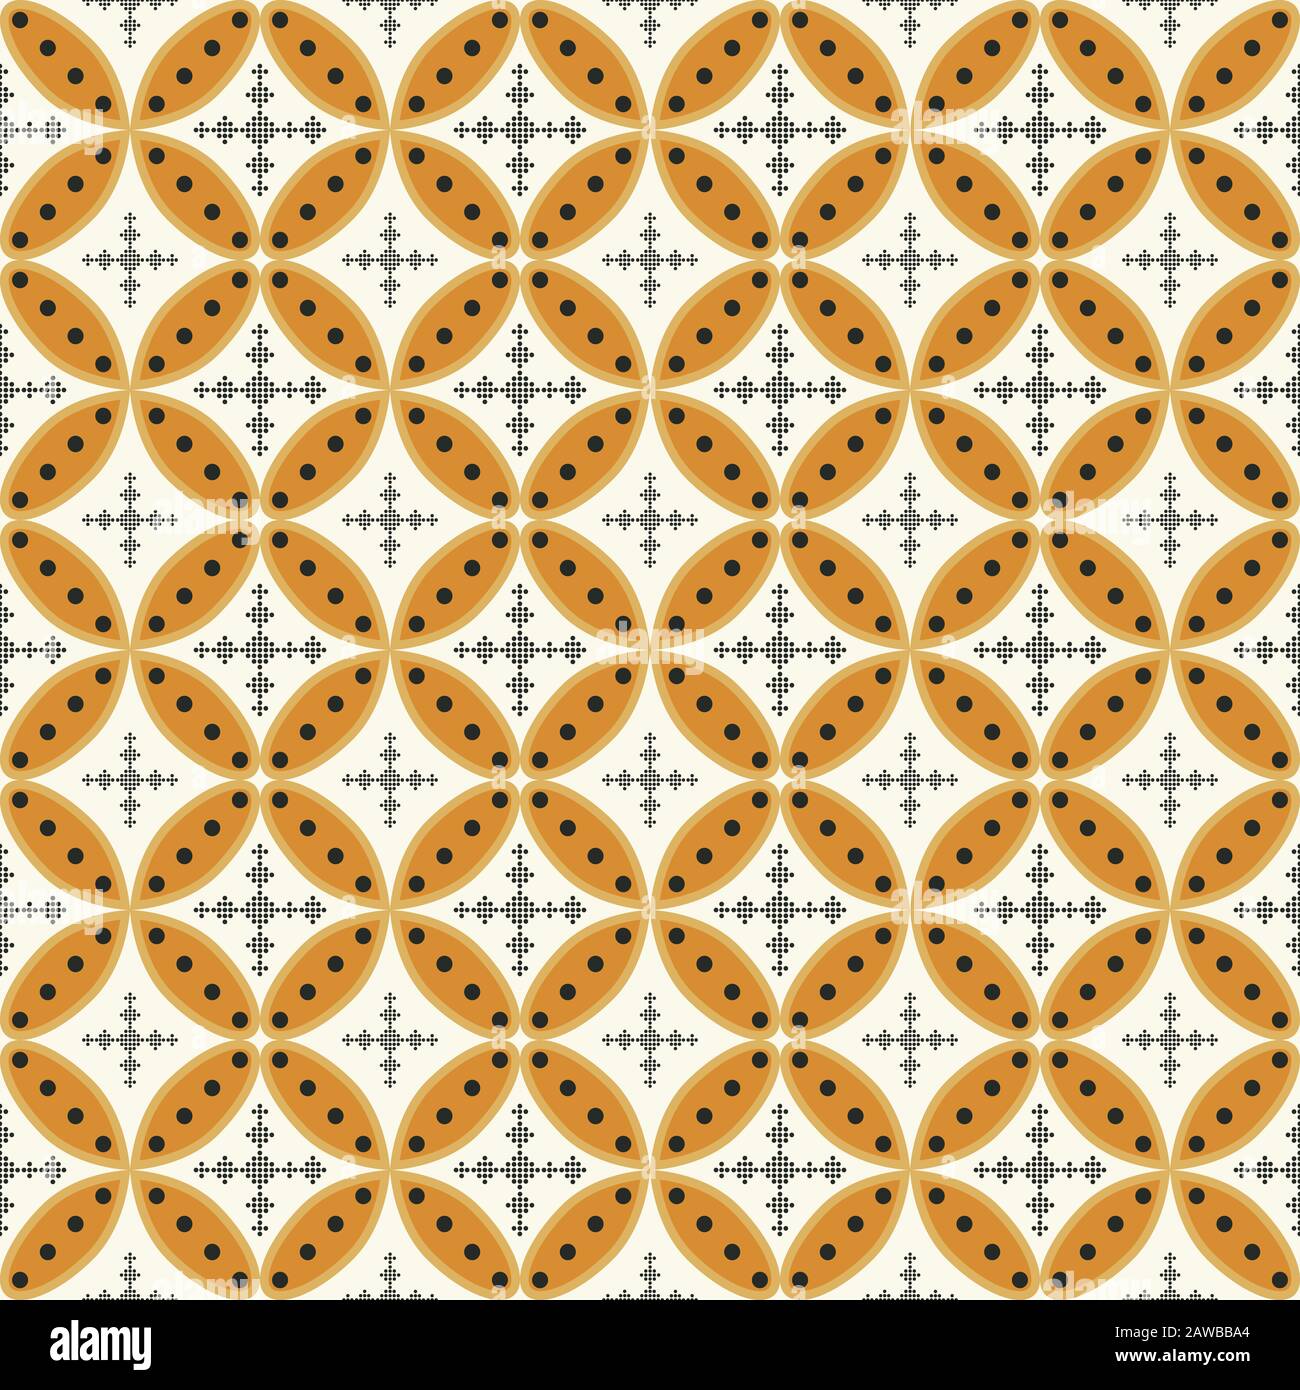 Batik là một loại hình thủ công tạo ra các họa tiết đặc trưng bằng cách phủ sáp trên vải trước khi nhuộm. Hãy xem bức ảnh về batik design này để hiểu rõ hơn về kỹ thuật độc đáo này và cảm nhận được sự tinh tế trong từng chi tiết.